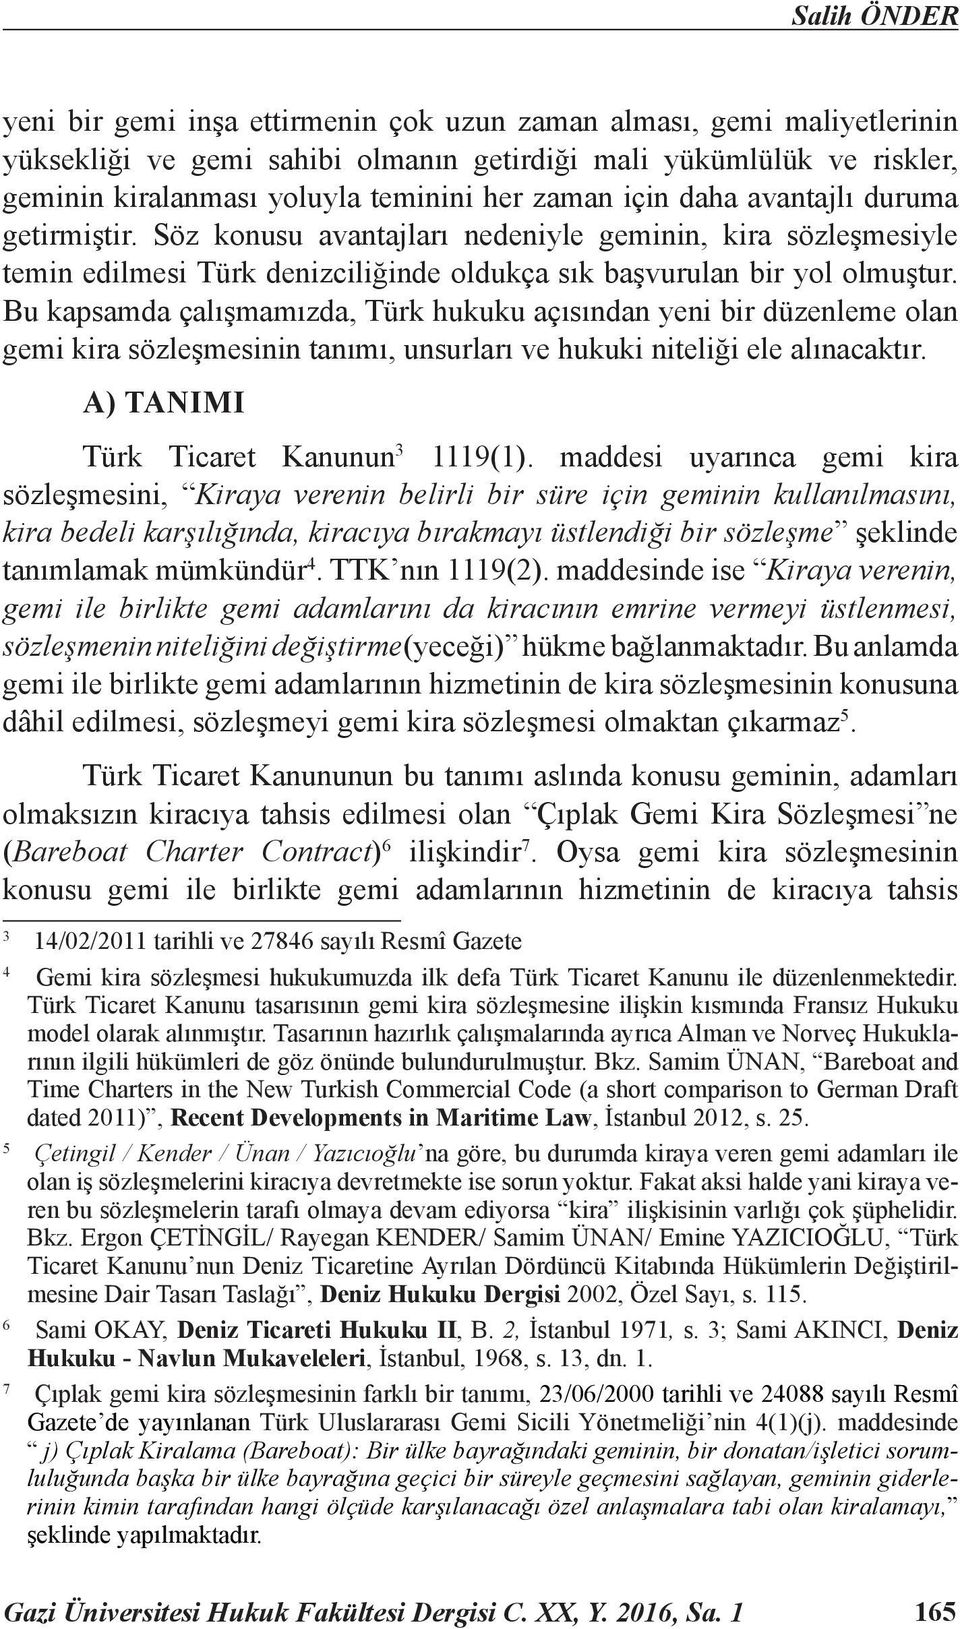 Bu kapsamda çalışmamızda, Türk hukuku açısından yeni bir düzenleme olan gemi kira sözleşmesinin tanımı, unsurları ve hukuki niteliği ele alınacaktır. A) TANIMI Türk Ticaret Kanunun 3 1119(1).